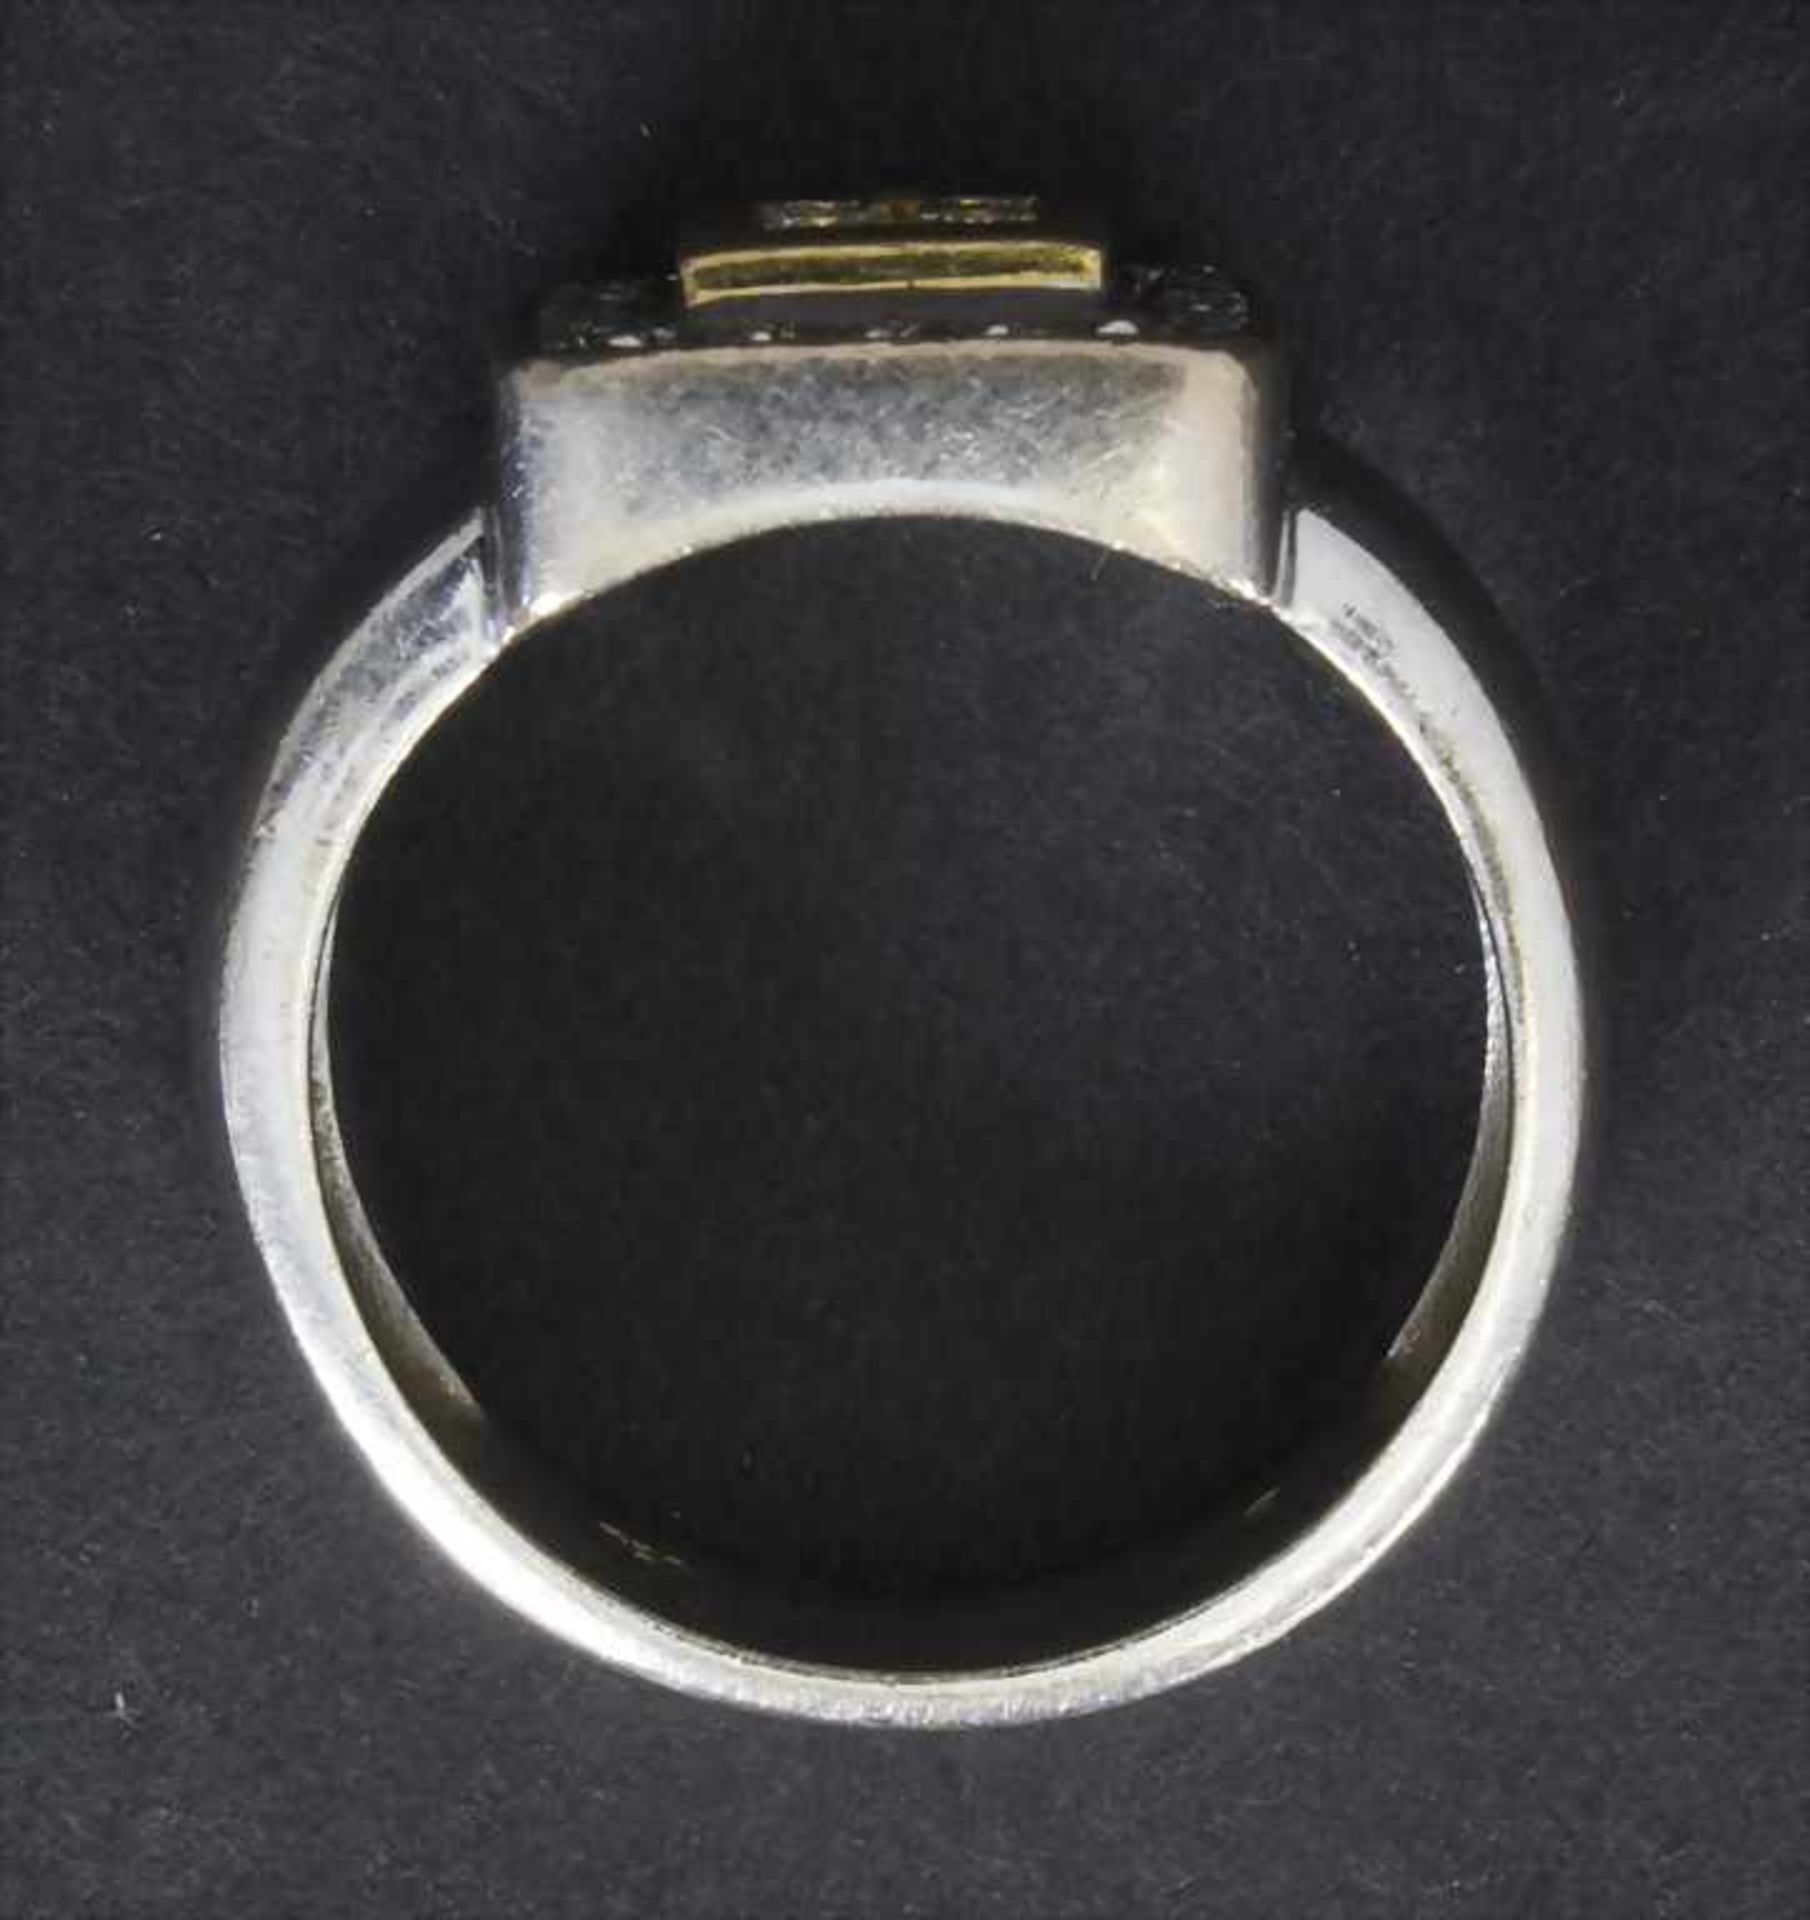 Damenring mit Diamanten / A ladies ring with diamondsMaterial: WG/GG 750/000 ,RG: 57,Gewicht: 11,8 - Image 2 of 2